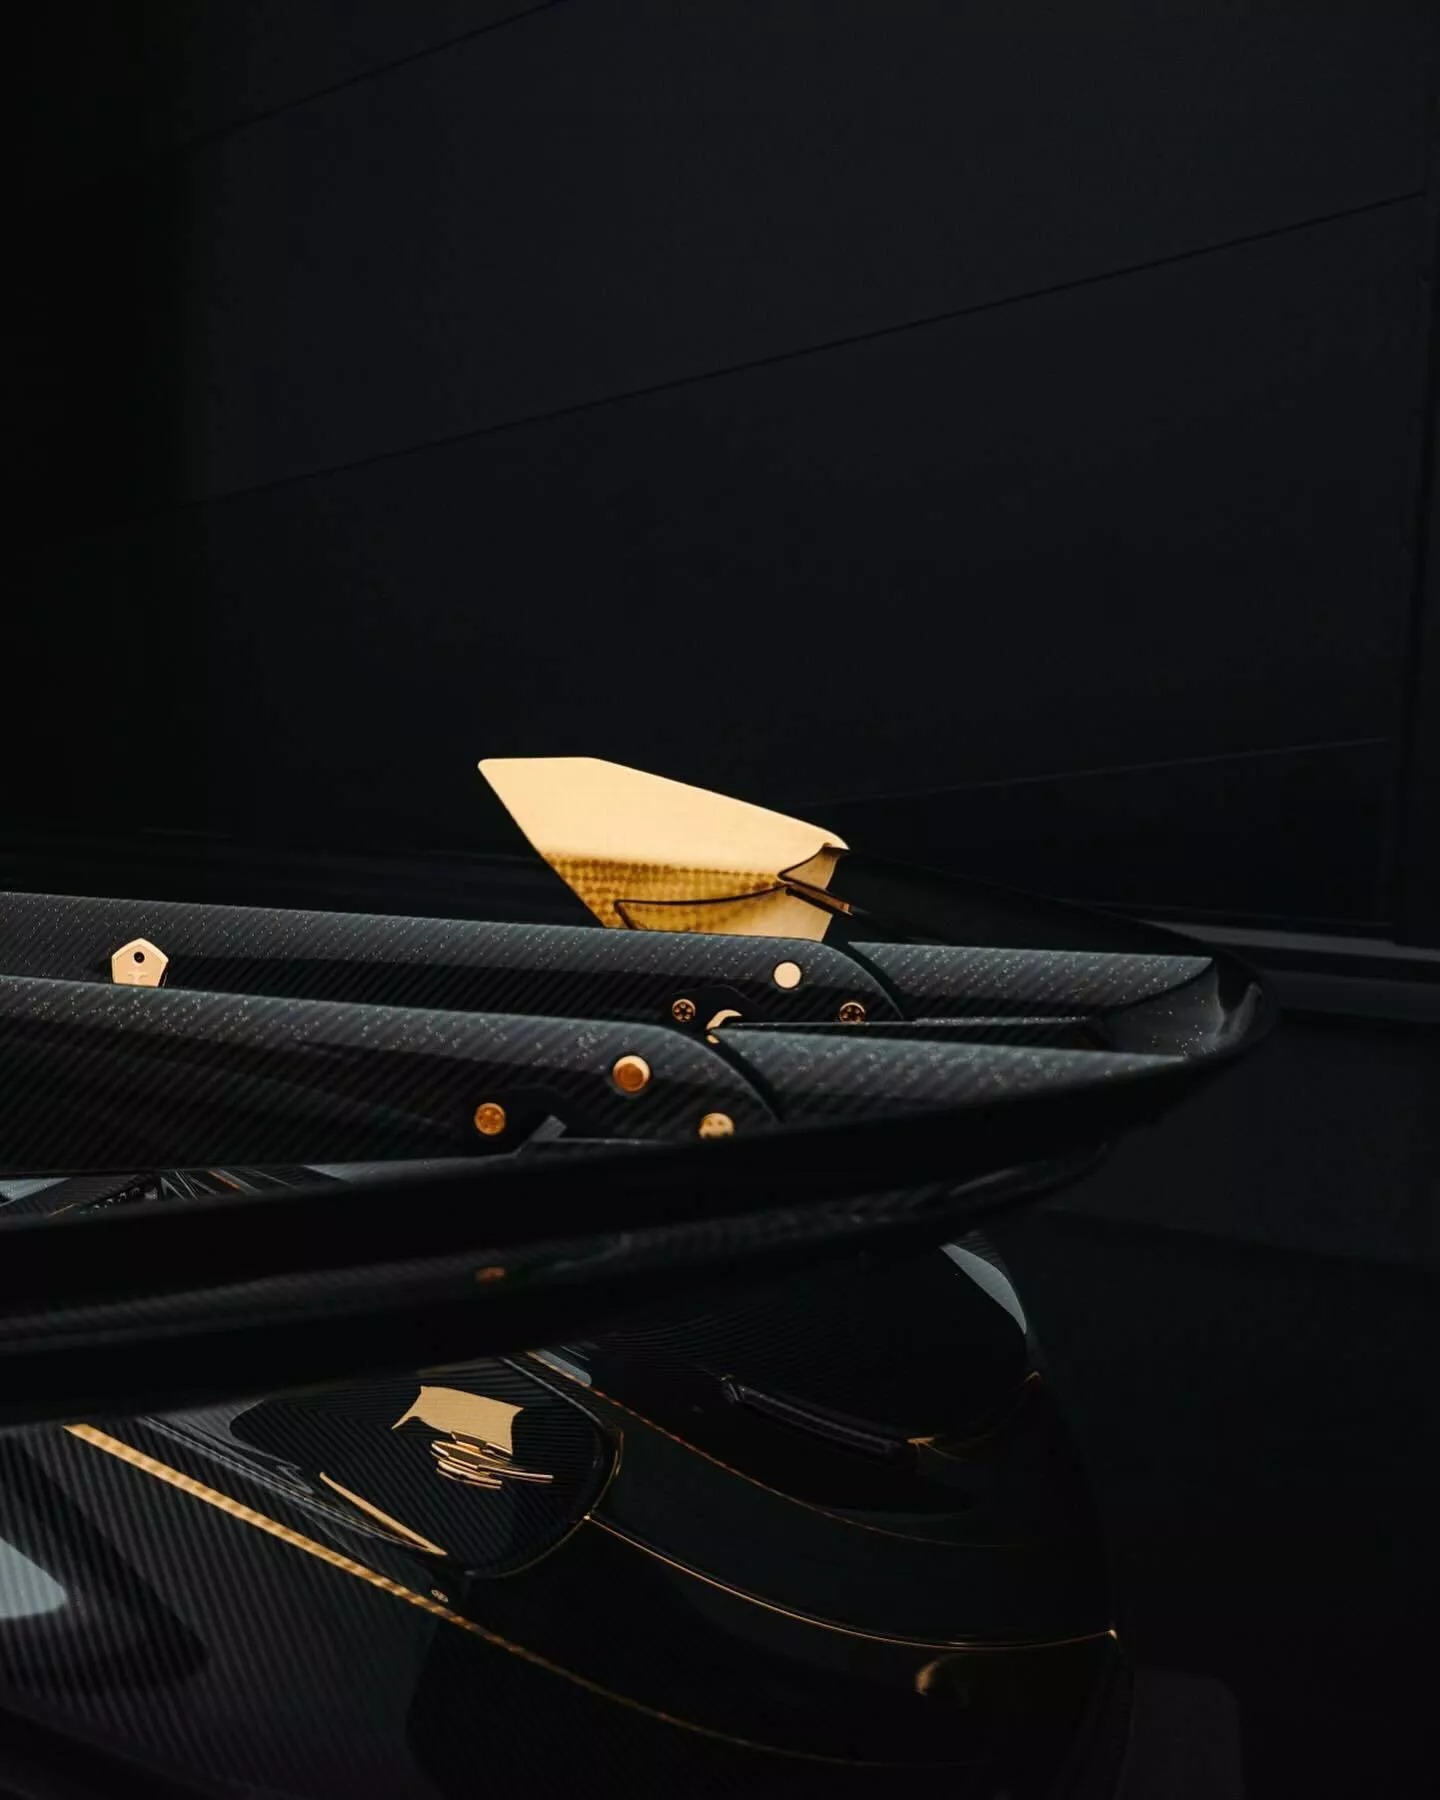 Đại gia bất động sản chơi siêu xe Koenigsegg khác người: Rắc bột vàng lên khắp vỏ carbon, mạ vàng 24k nhiều chi tiết ngoại thất